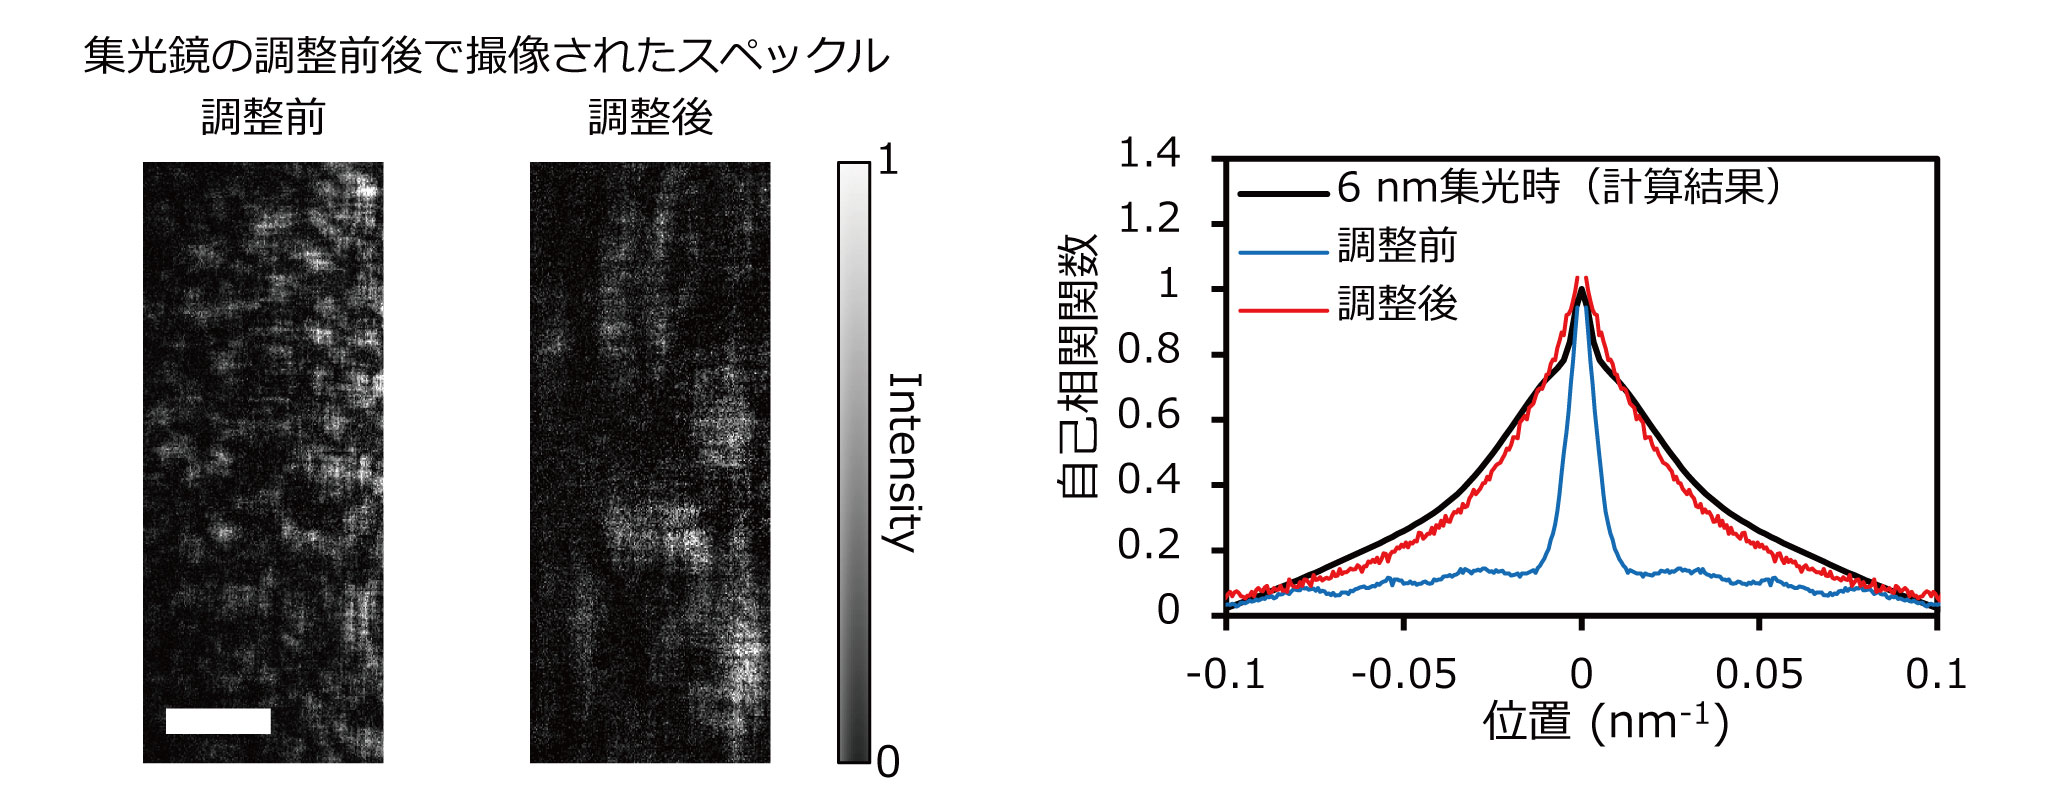 図３　集光鏡の配置最適化前後で撮像されたスペックル（左画像、スケールバーは0.06 nm<sup>-1</sup>）、及び6 nm集光時に得られるスペックル形状の計算値と実測されたスペックル形状の比較（右グラフ）。比較は全て垂直方向